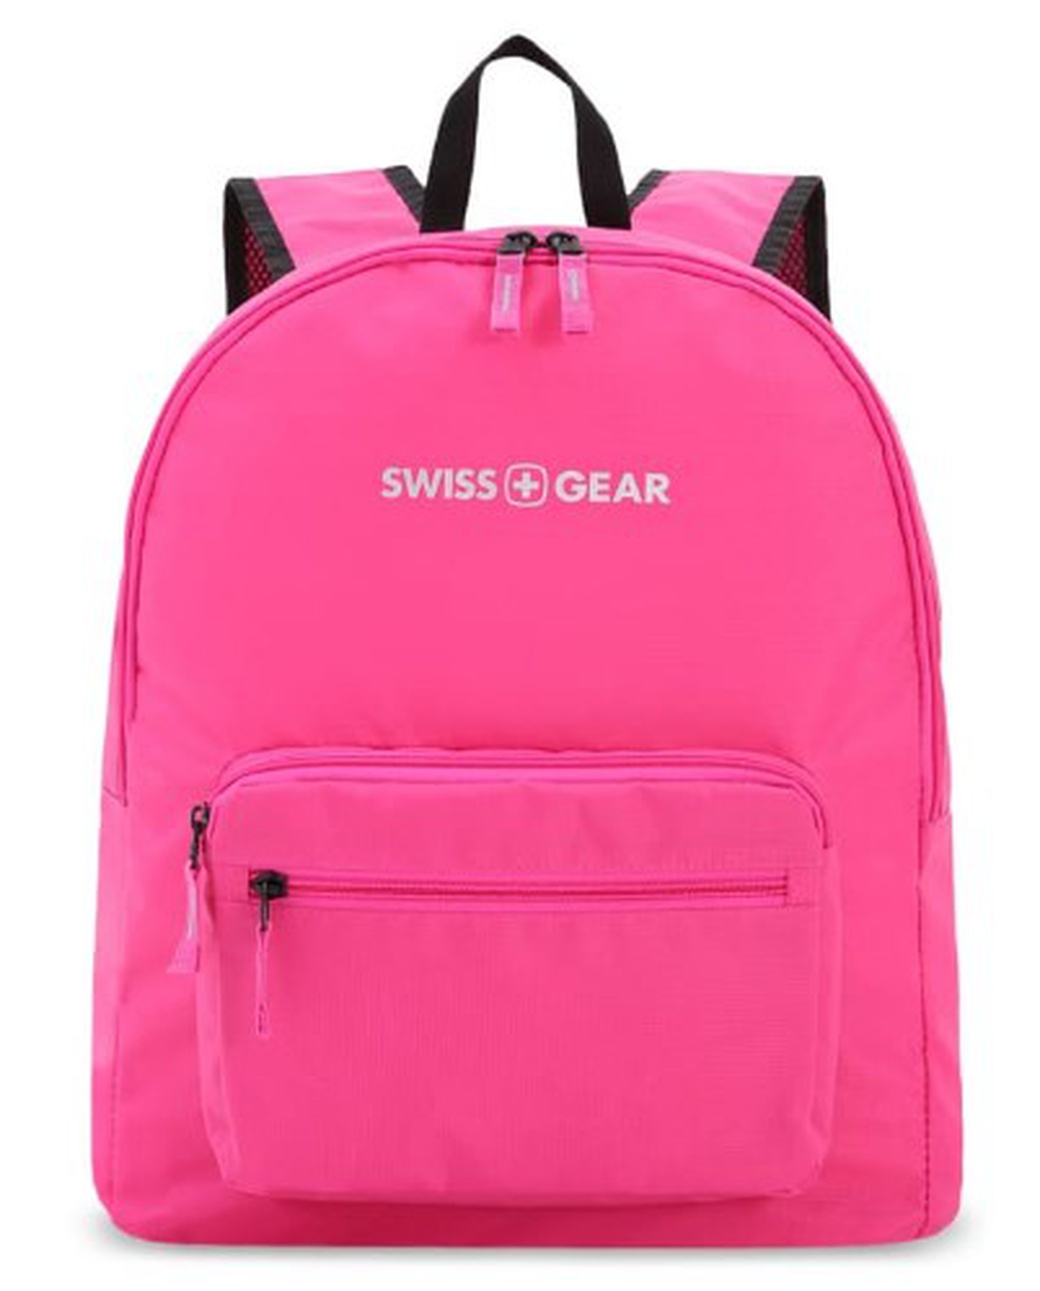 Рюкзак Swissgear складной, розовый, 33,5х15,5x40 см, 21 л, шт фото